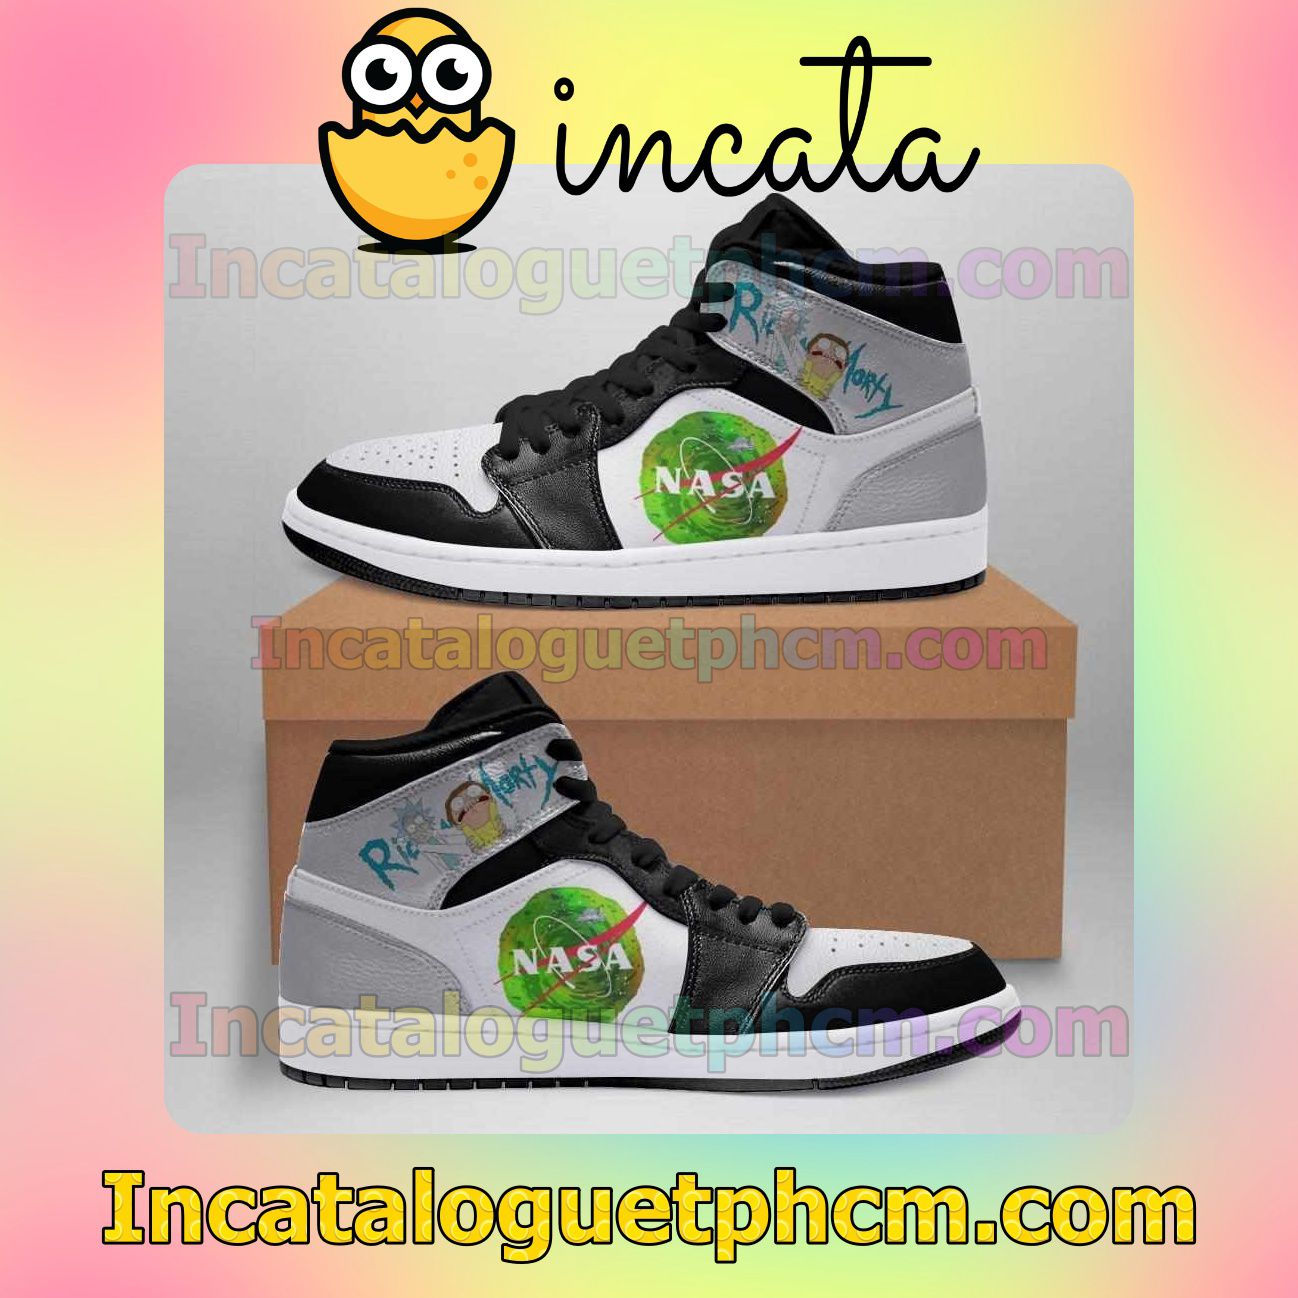 Nasa Rick And Morty 1s Air Jordan 1 Inspired Shoes